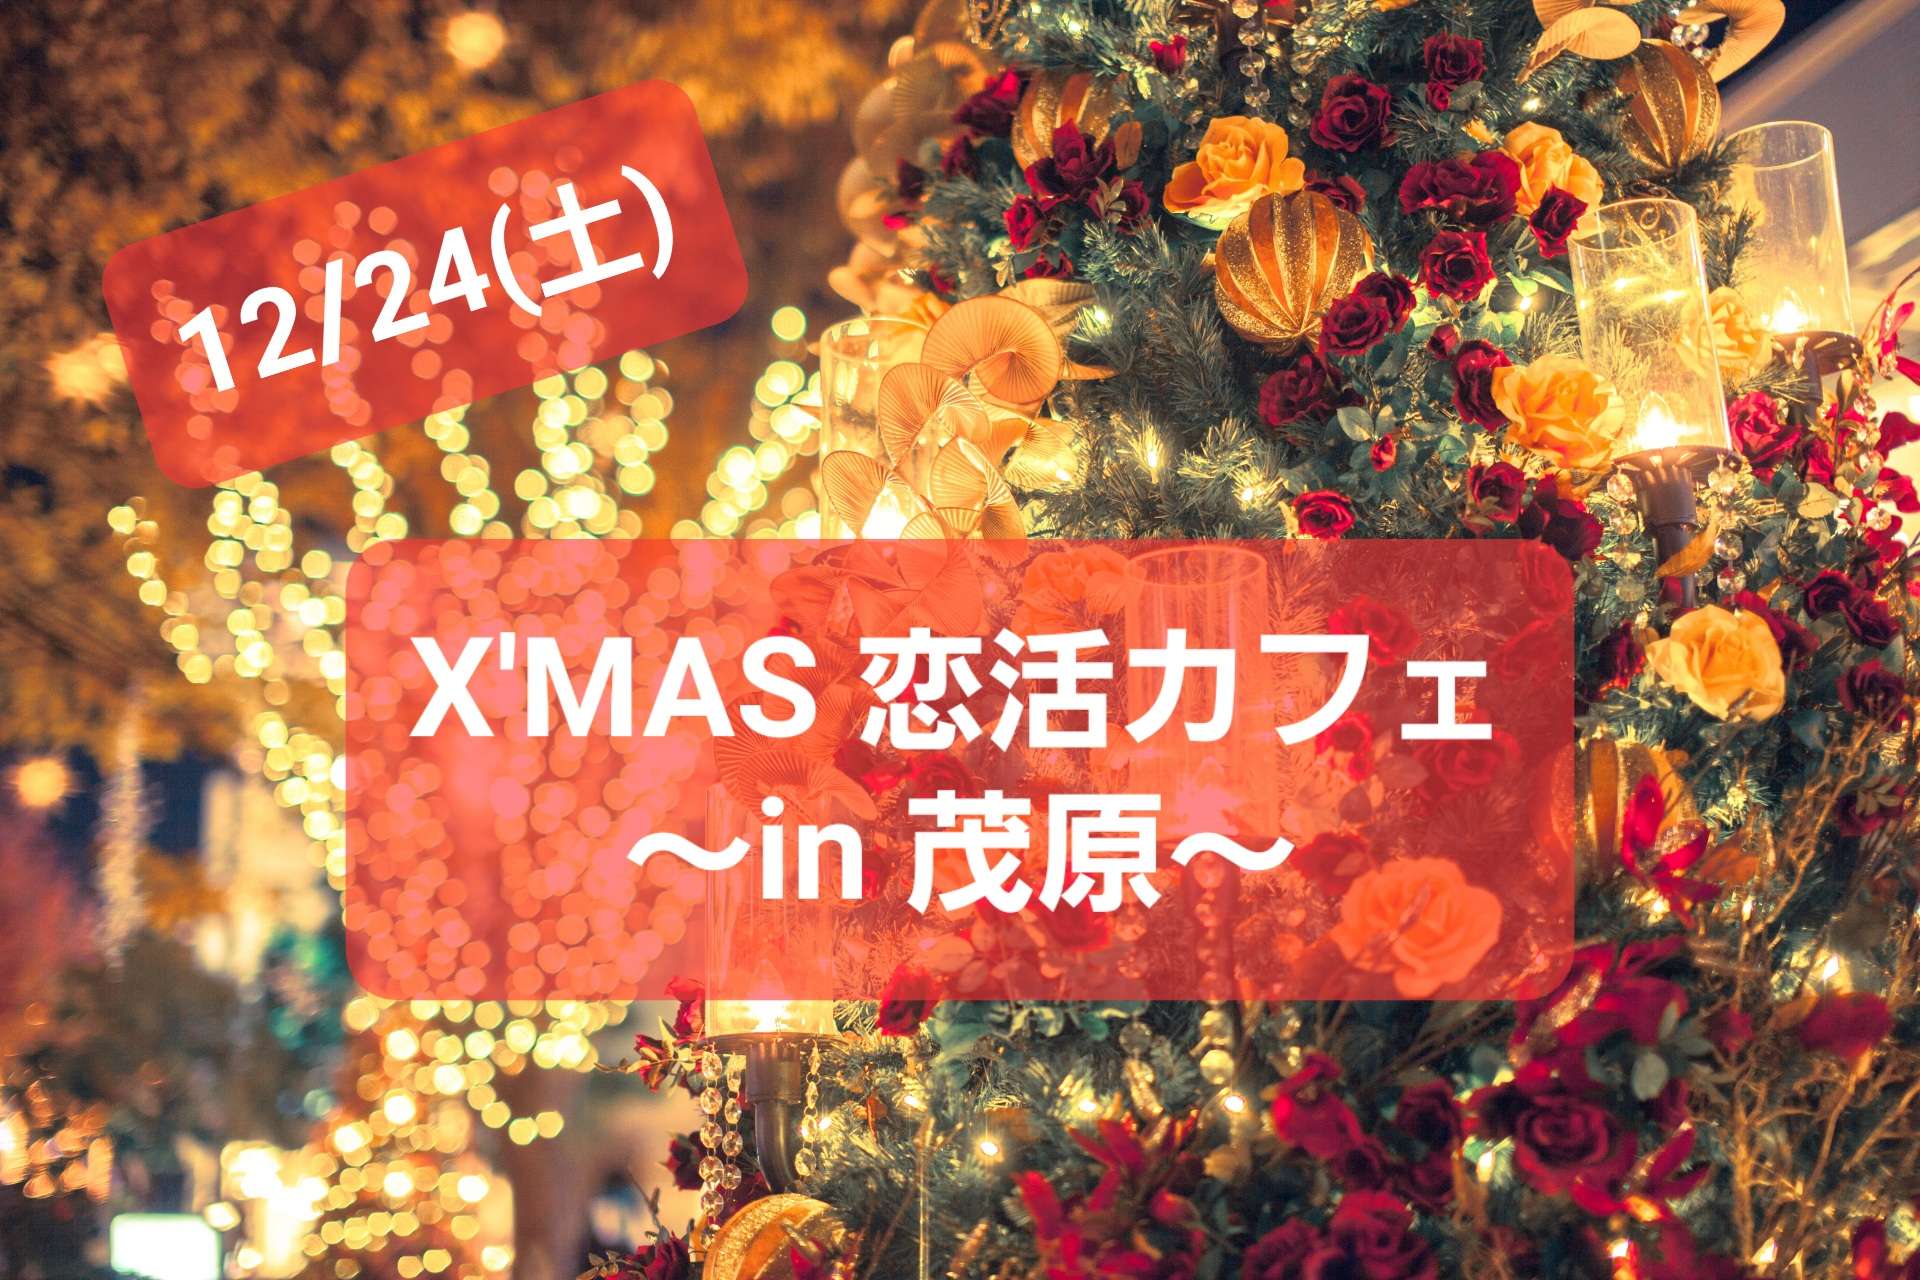 12/24(土)X'mas 恋活カフェを開催します♡